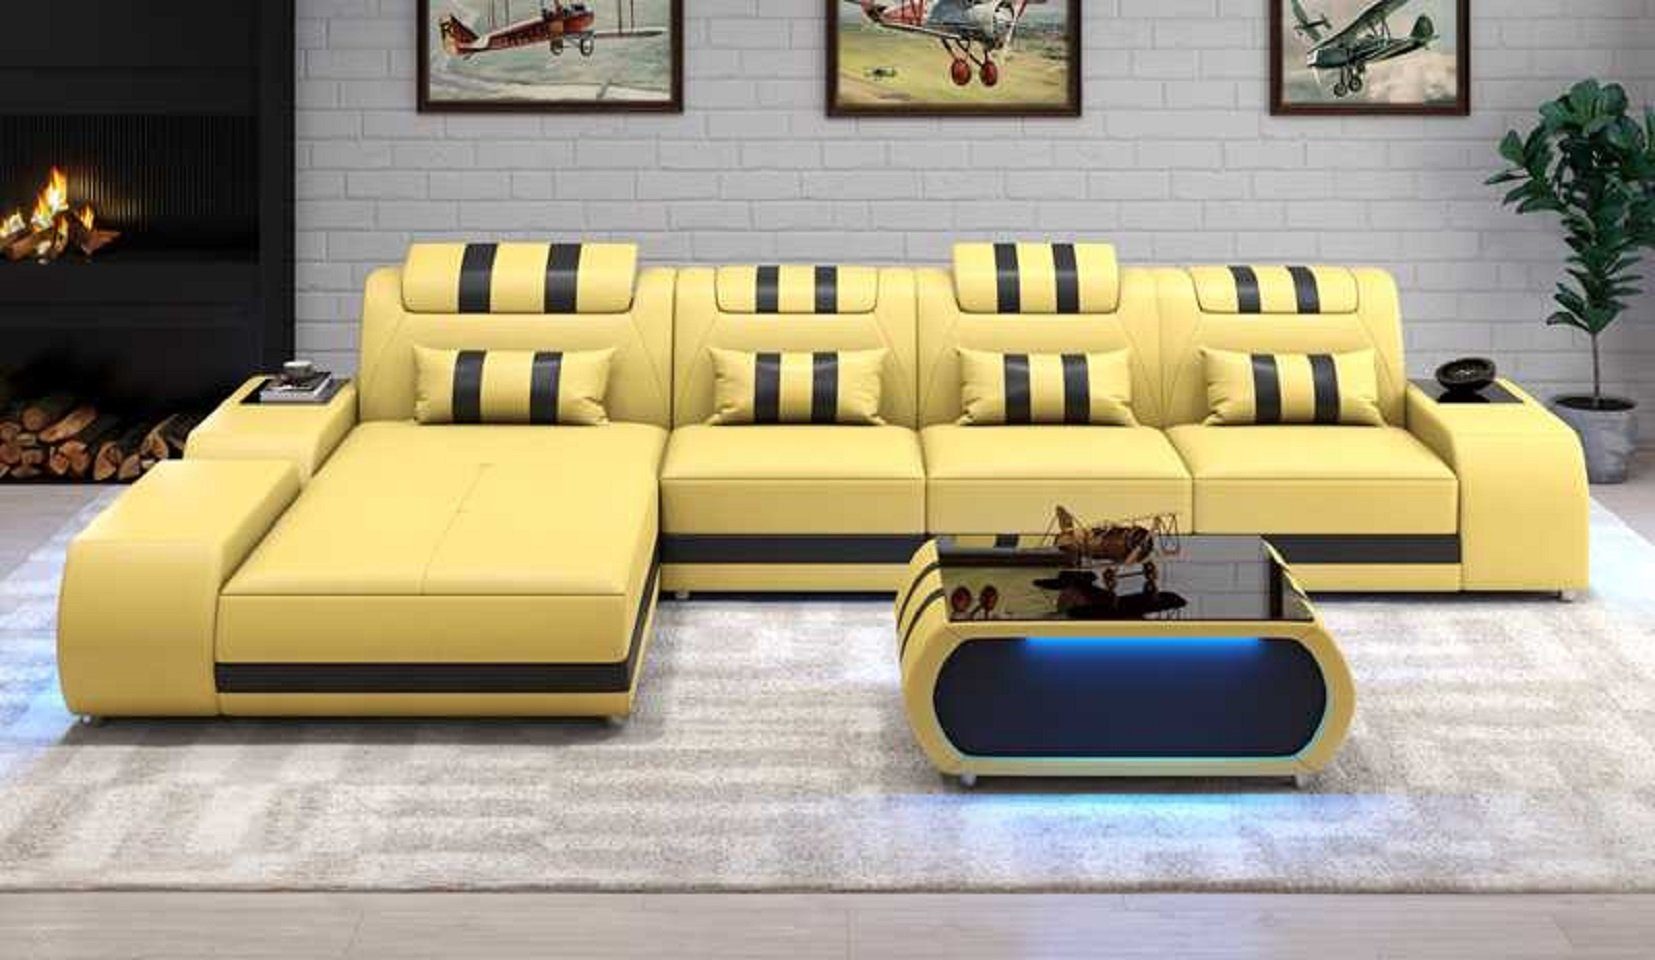 JVmoebel Ecksofa Eckgarnitur Europe Couch L Design Ledersofa Teile, Form in Made Couchen, Beige Sofa Ecksofa Luxus 3